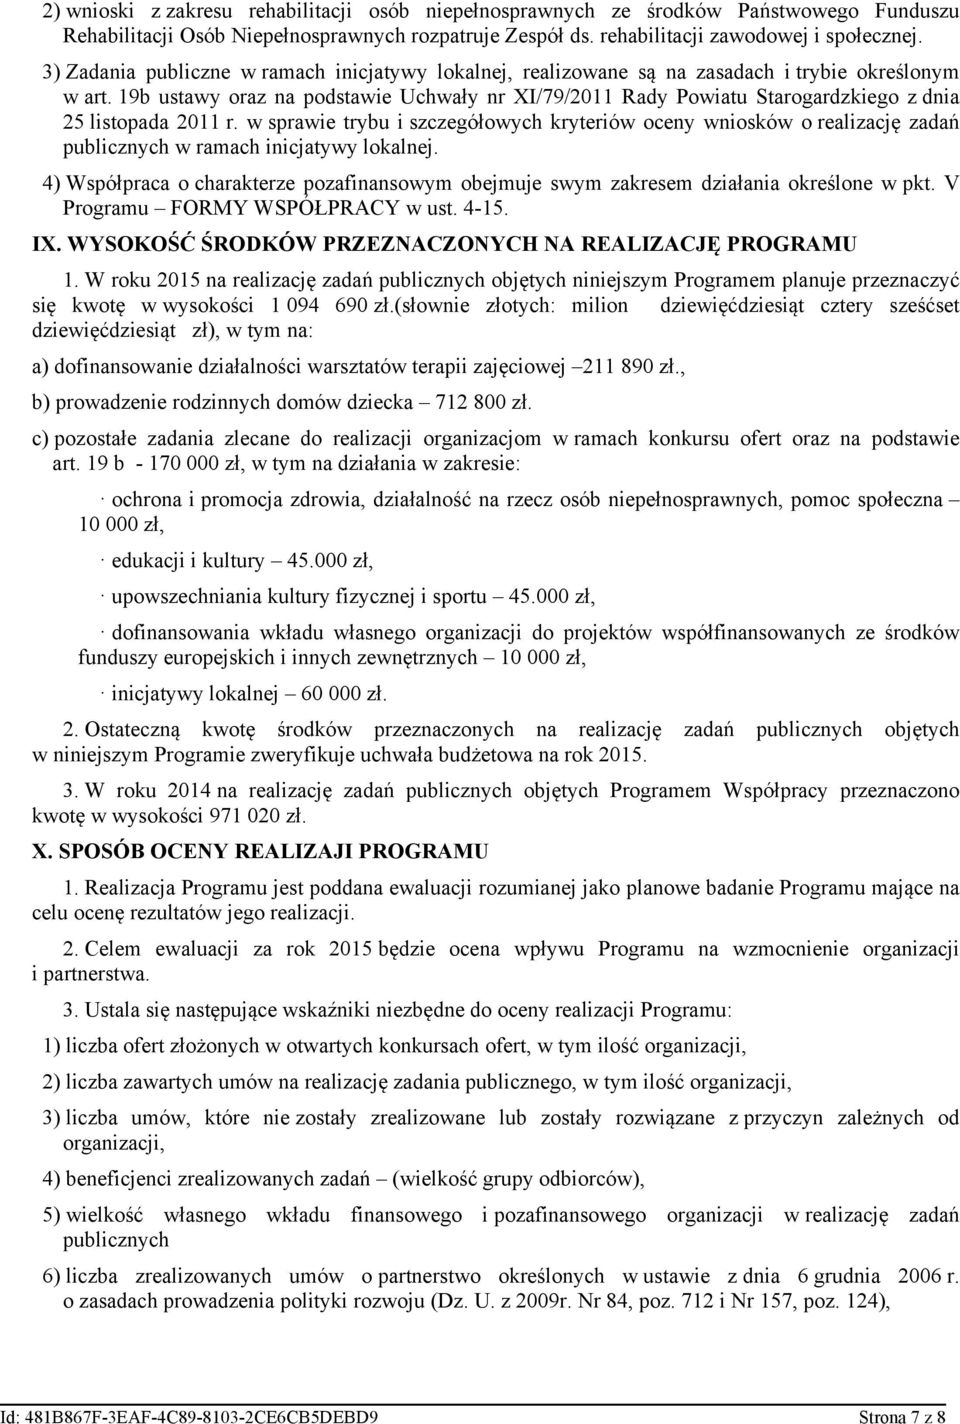 19b ustawy oraz na podstawie Uchwały nr XI/79/2011 Rady Powiatu Starogardzkiego z dnia 25 listopada 2011 r.